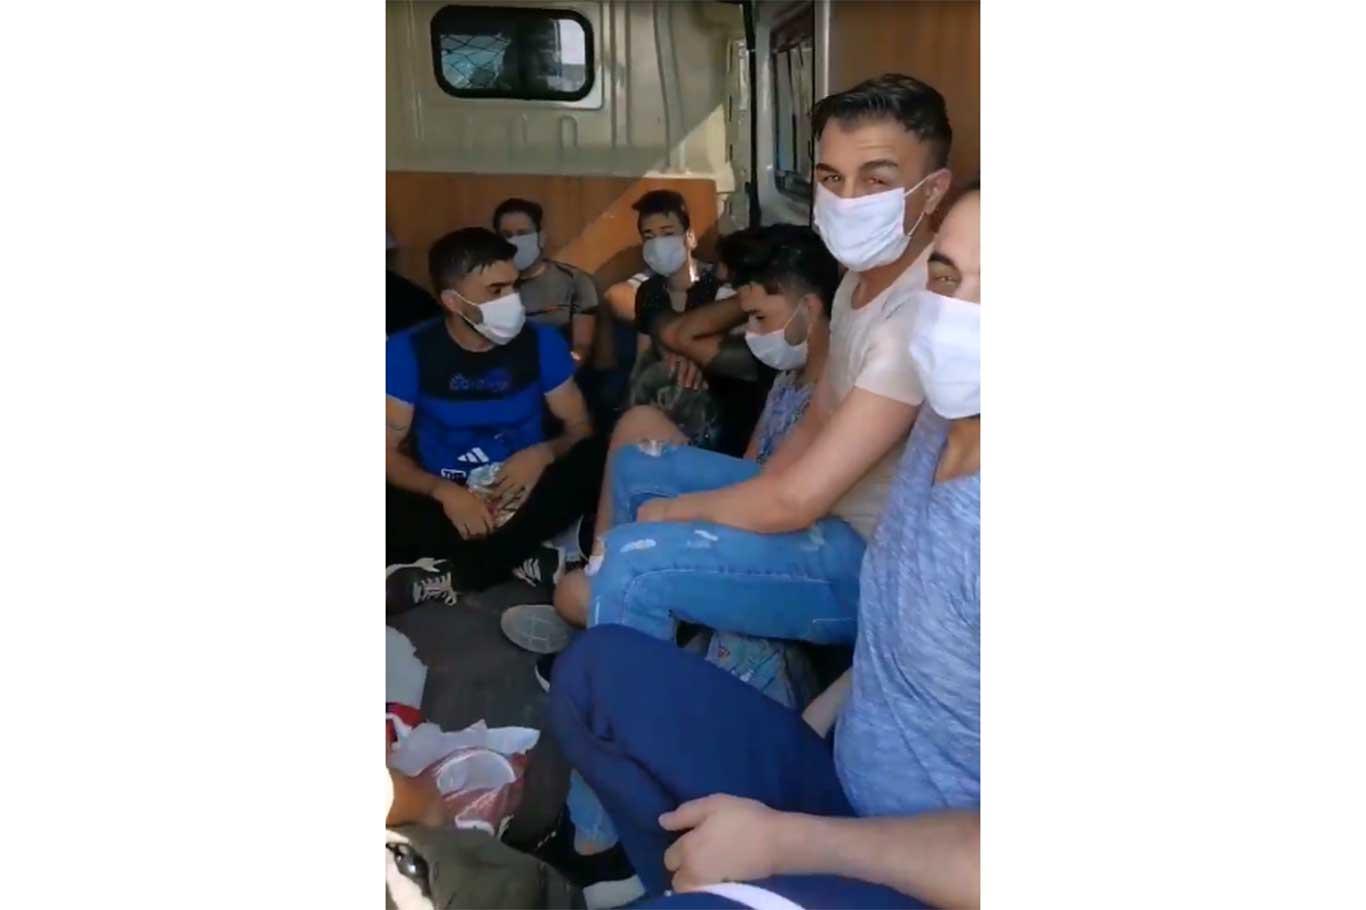 Gaziantep'te uygulama noktasında durdurulan araçtan 18 kişi çıktı